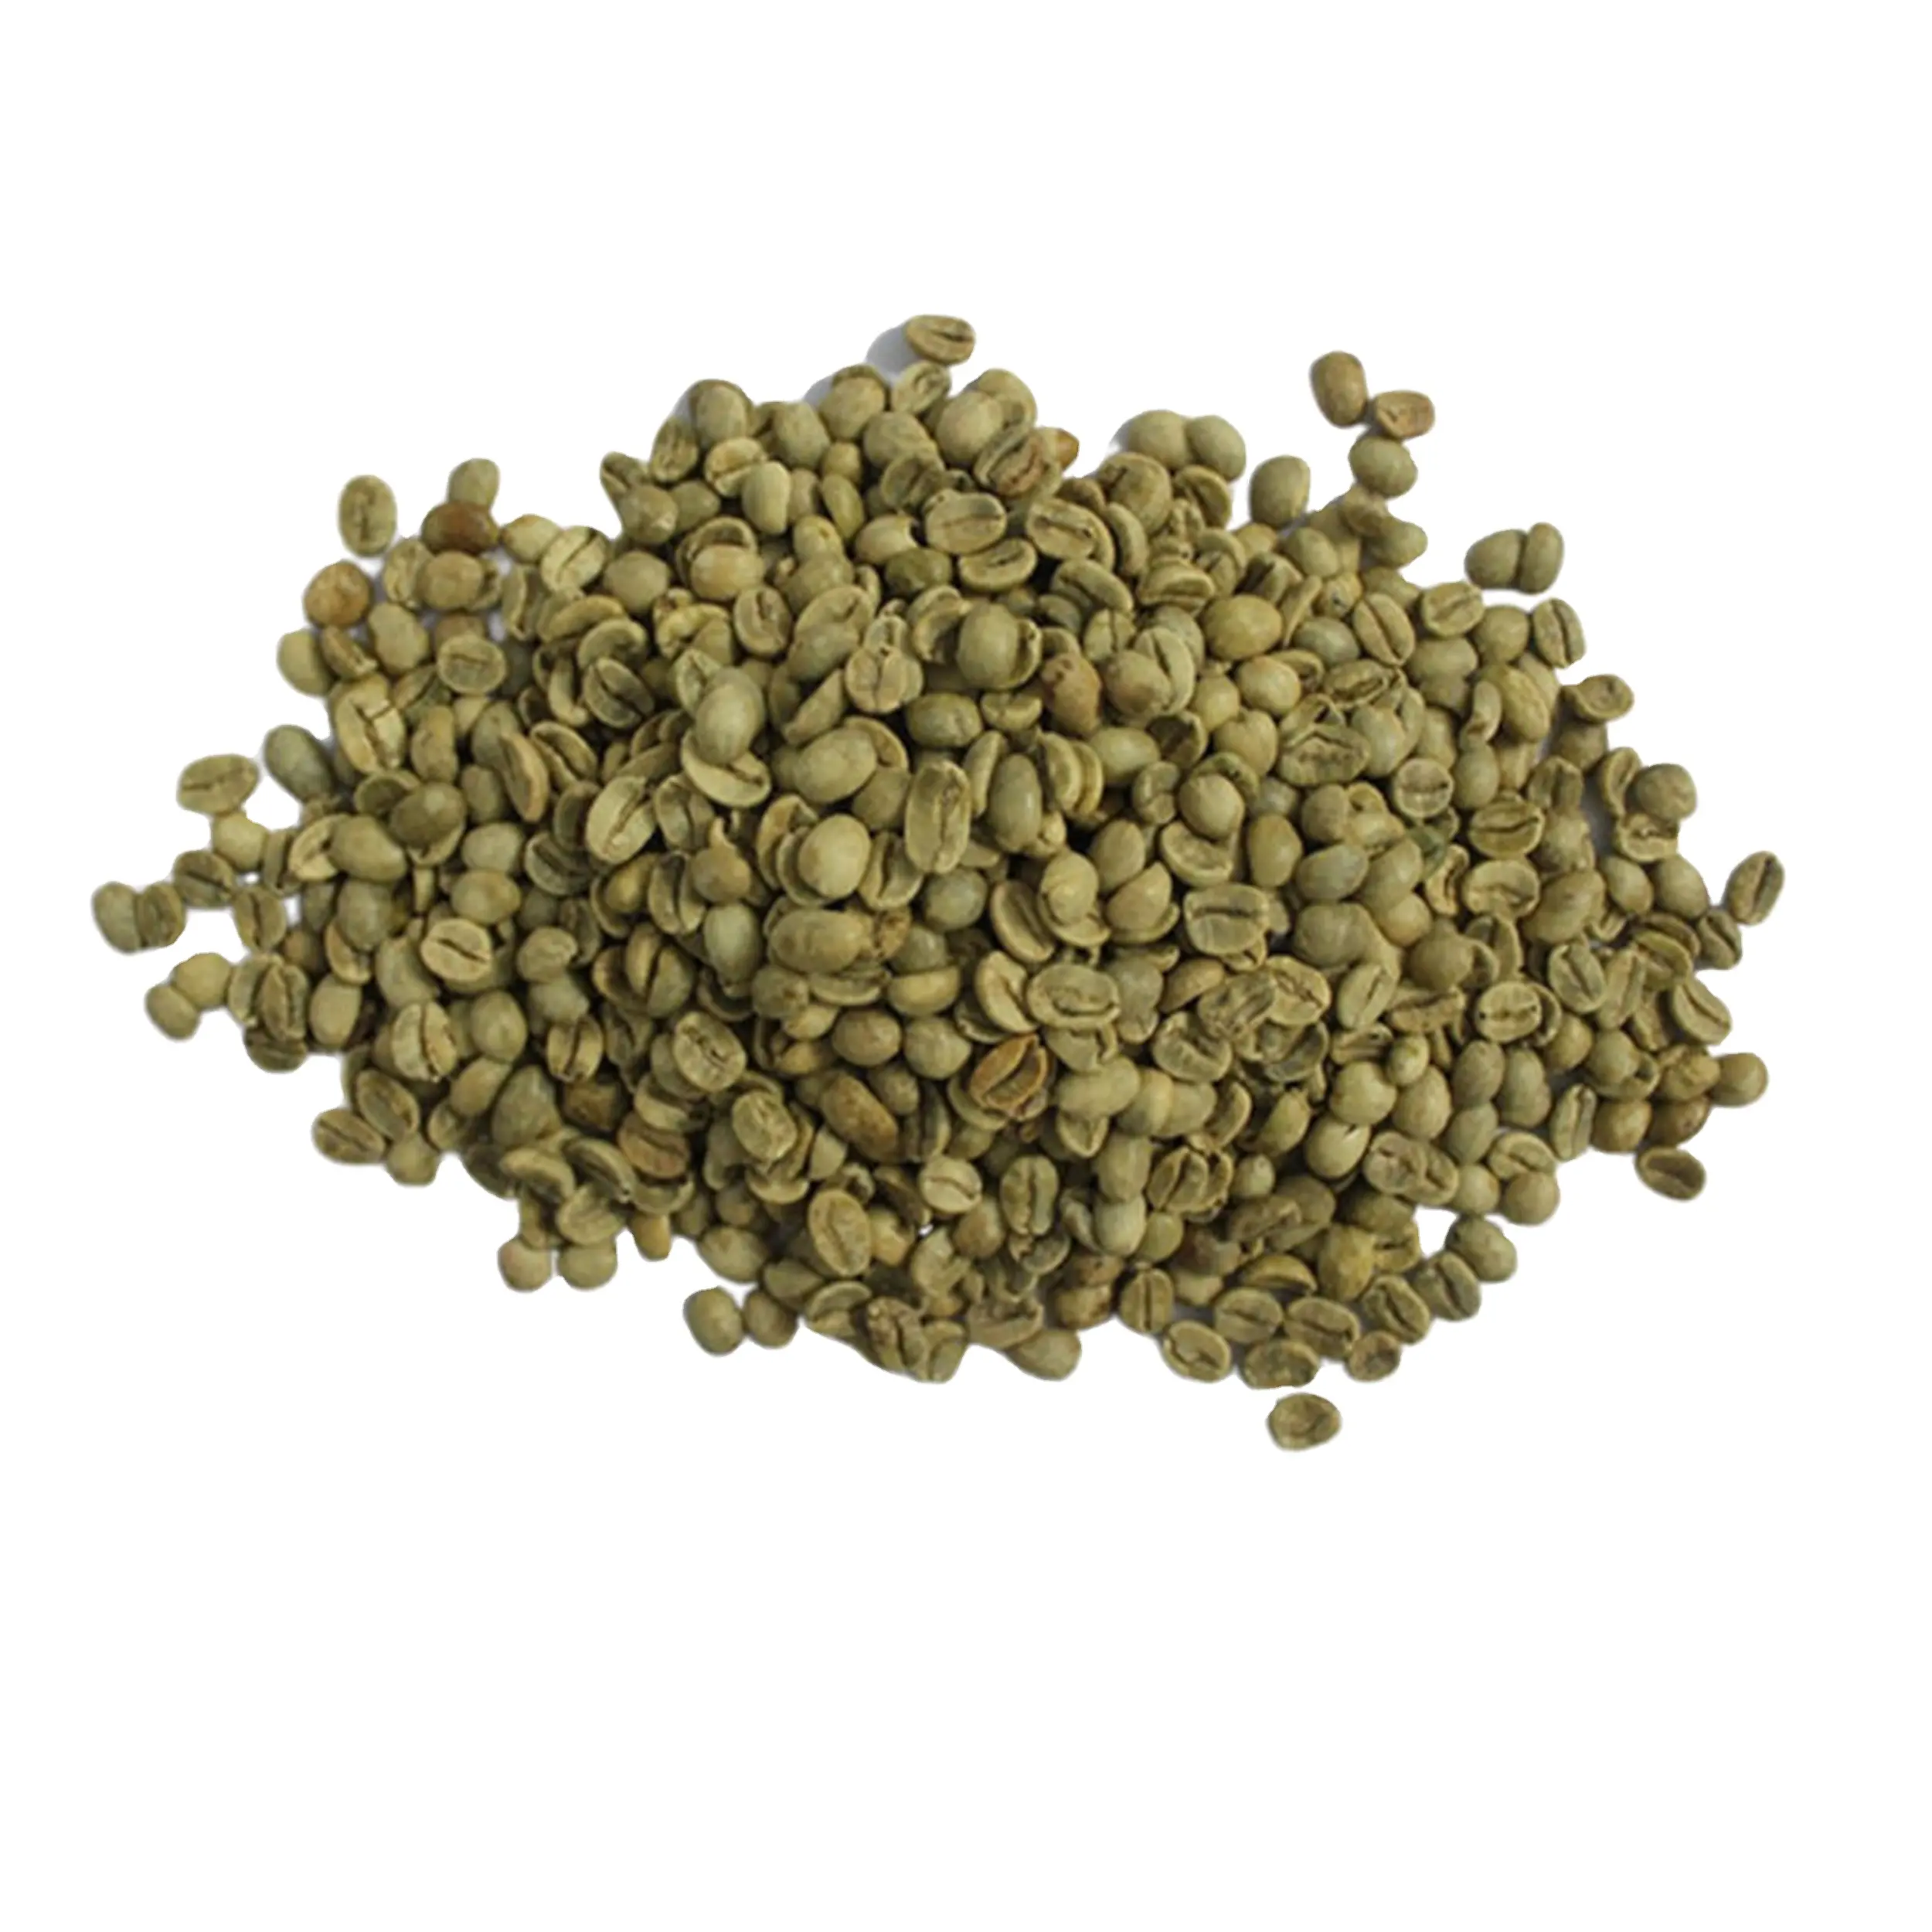 최고 품질 프리미엄 등급 녹색 커피 콩 베트남 원래 최고의 가격 100% 천연 순수 녹색 커피 콩 뜨거운 판매